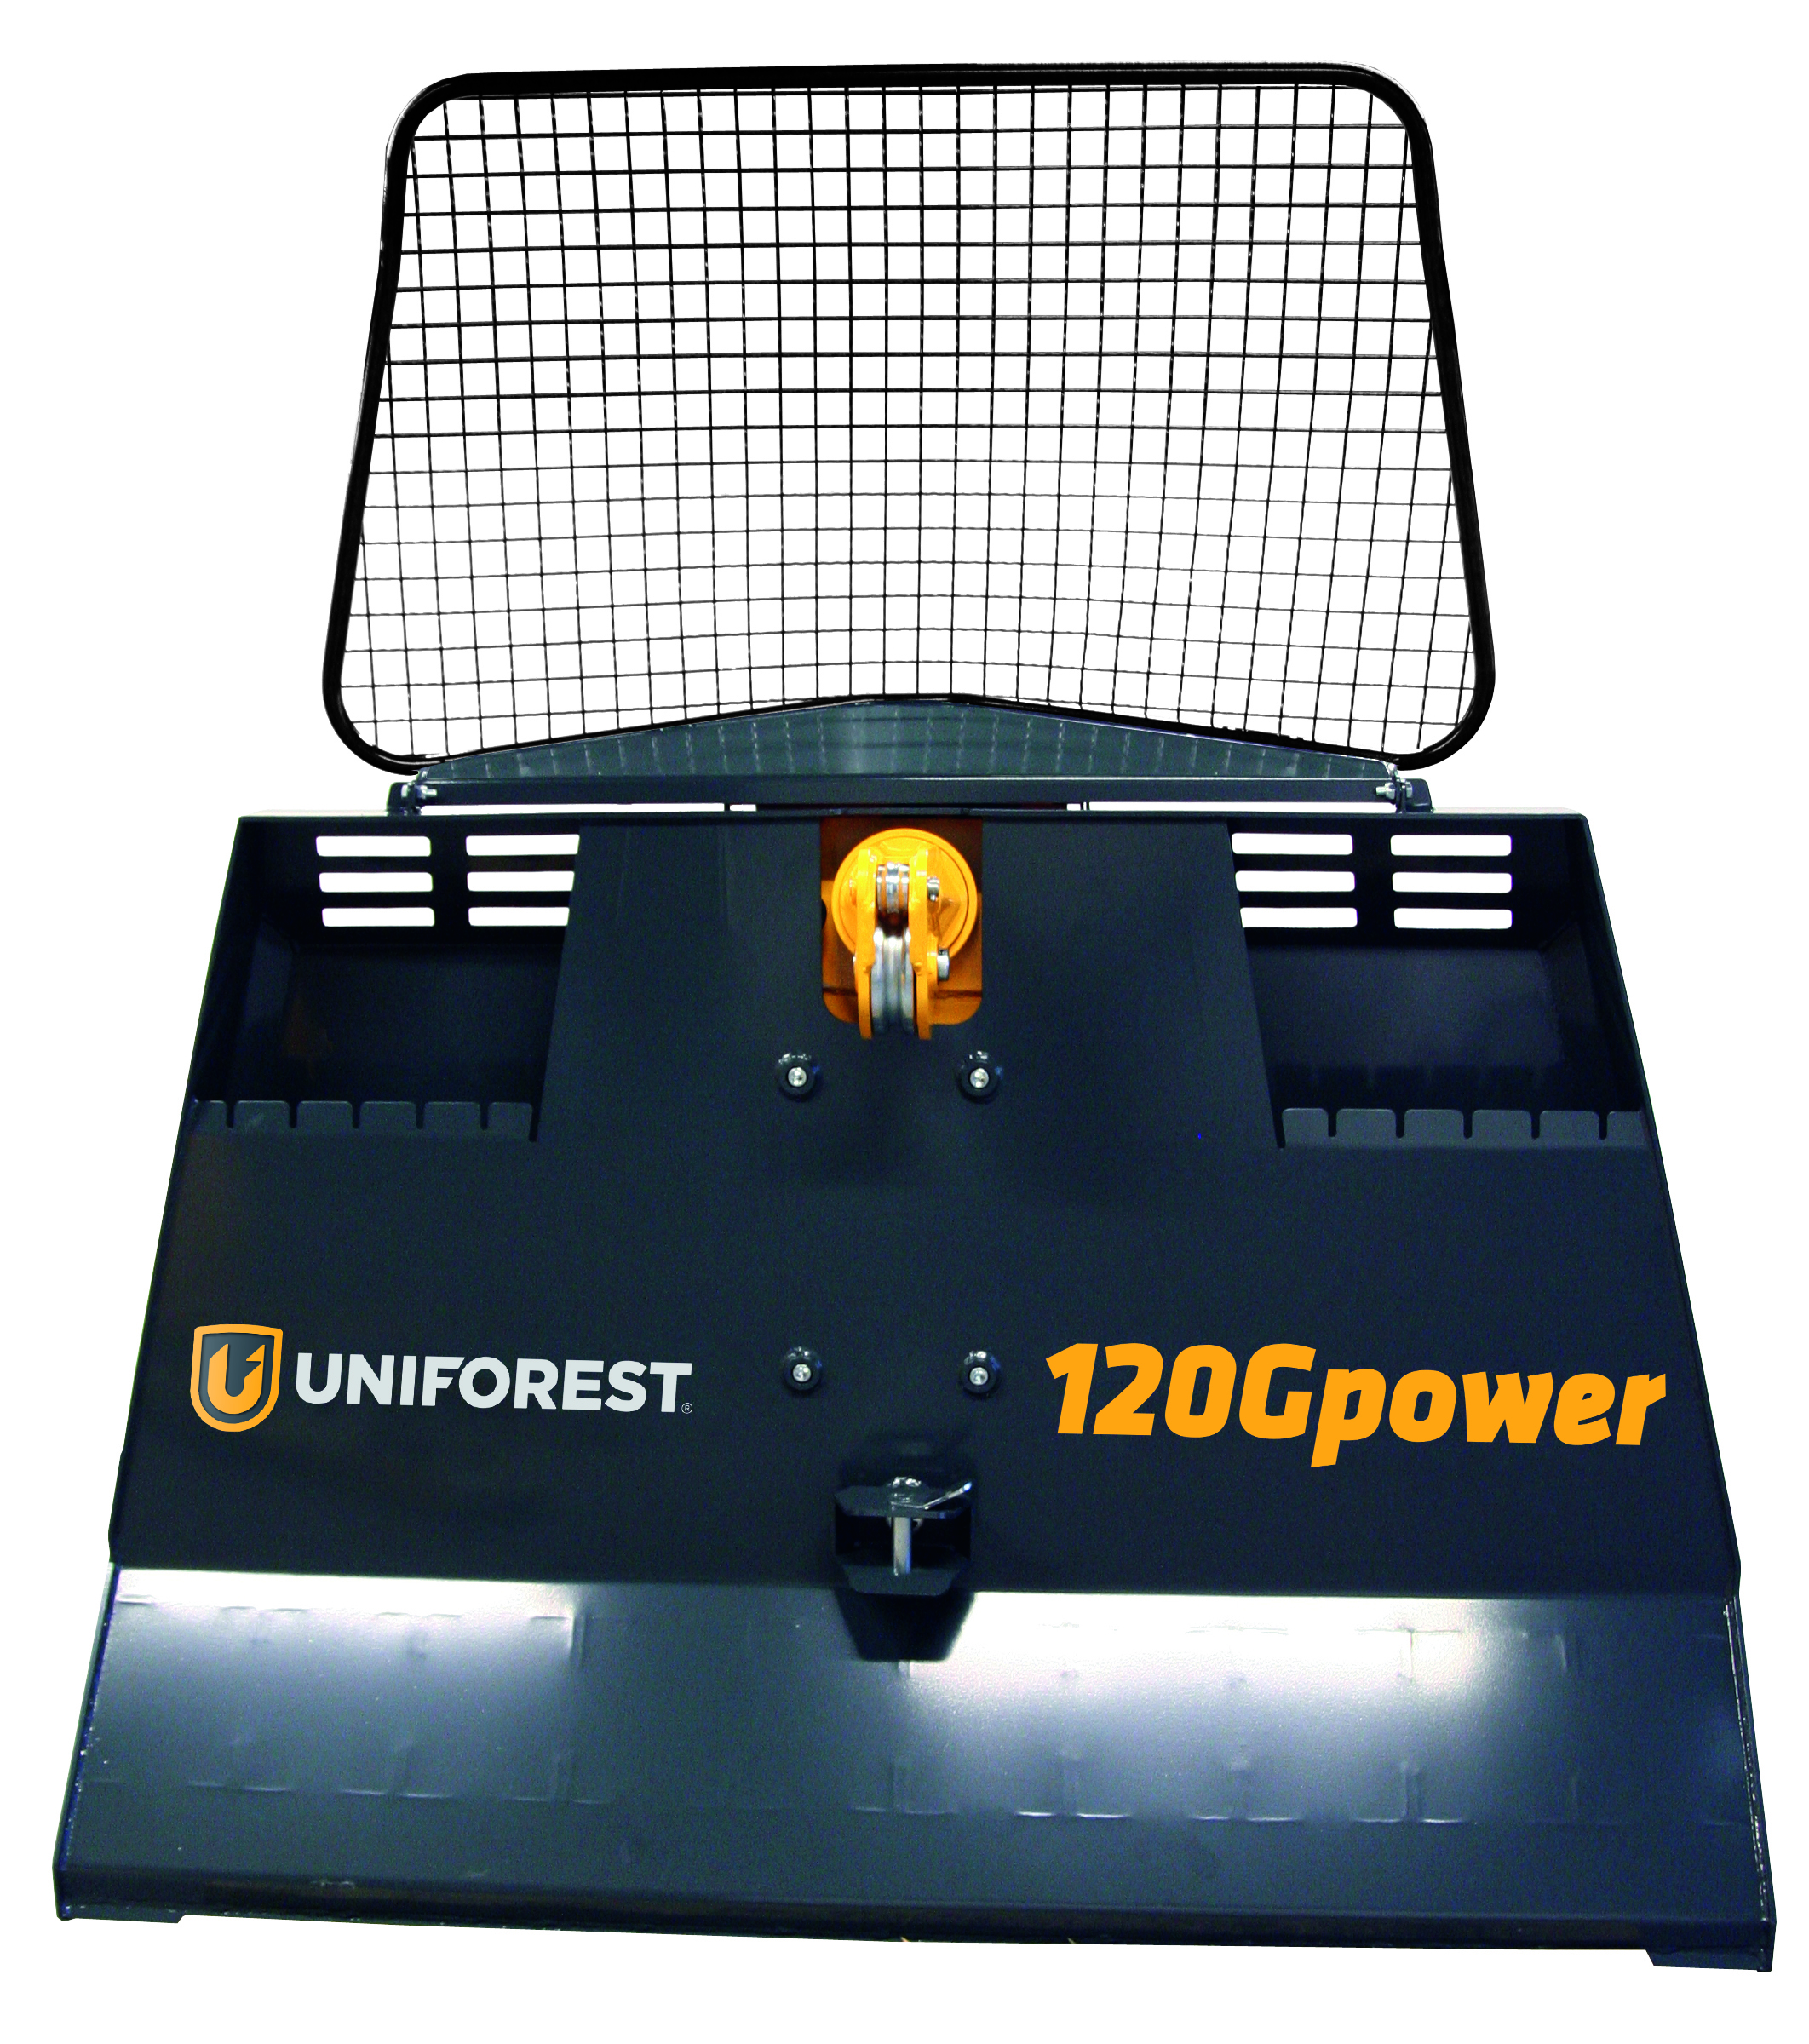 Troliu forestier Uniforest 120G Power